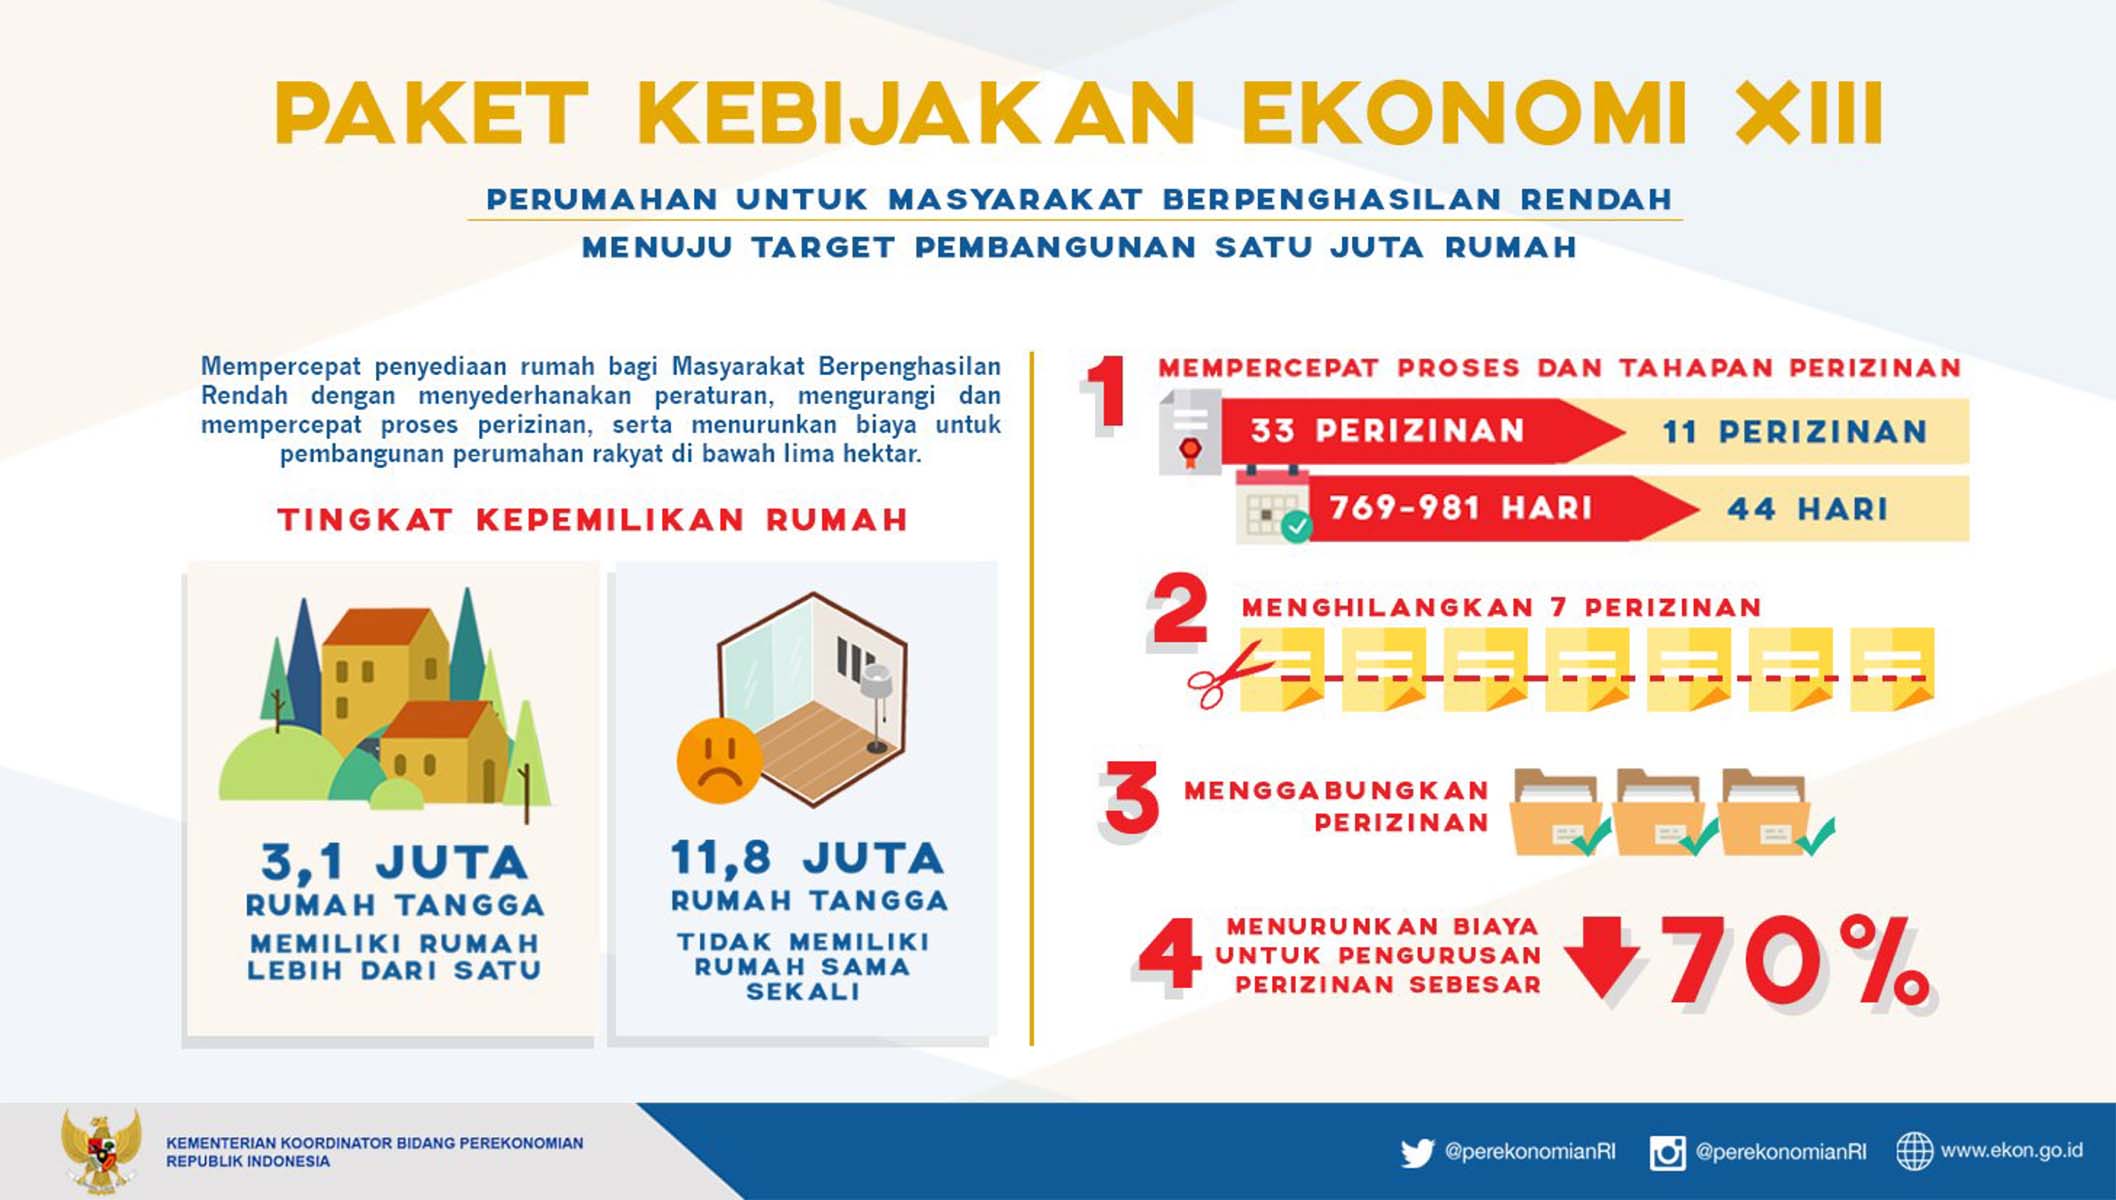 20160826 Infografis Paket Ekonomi XIII